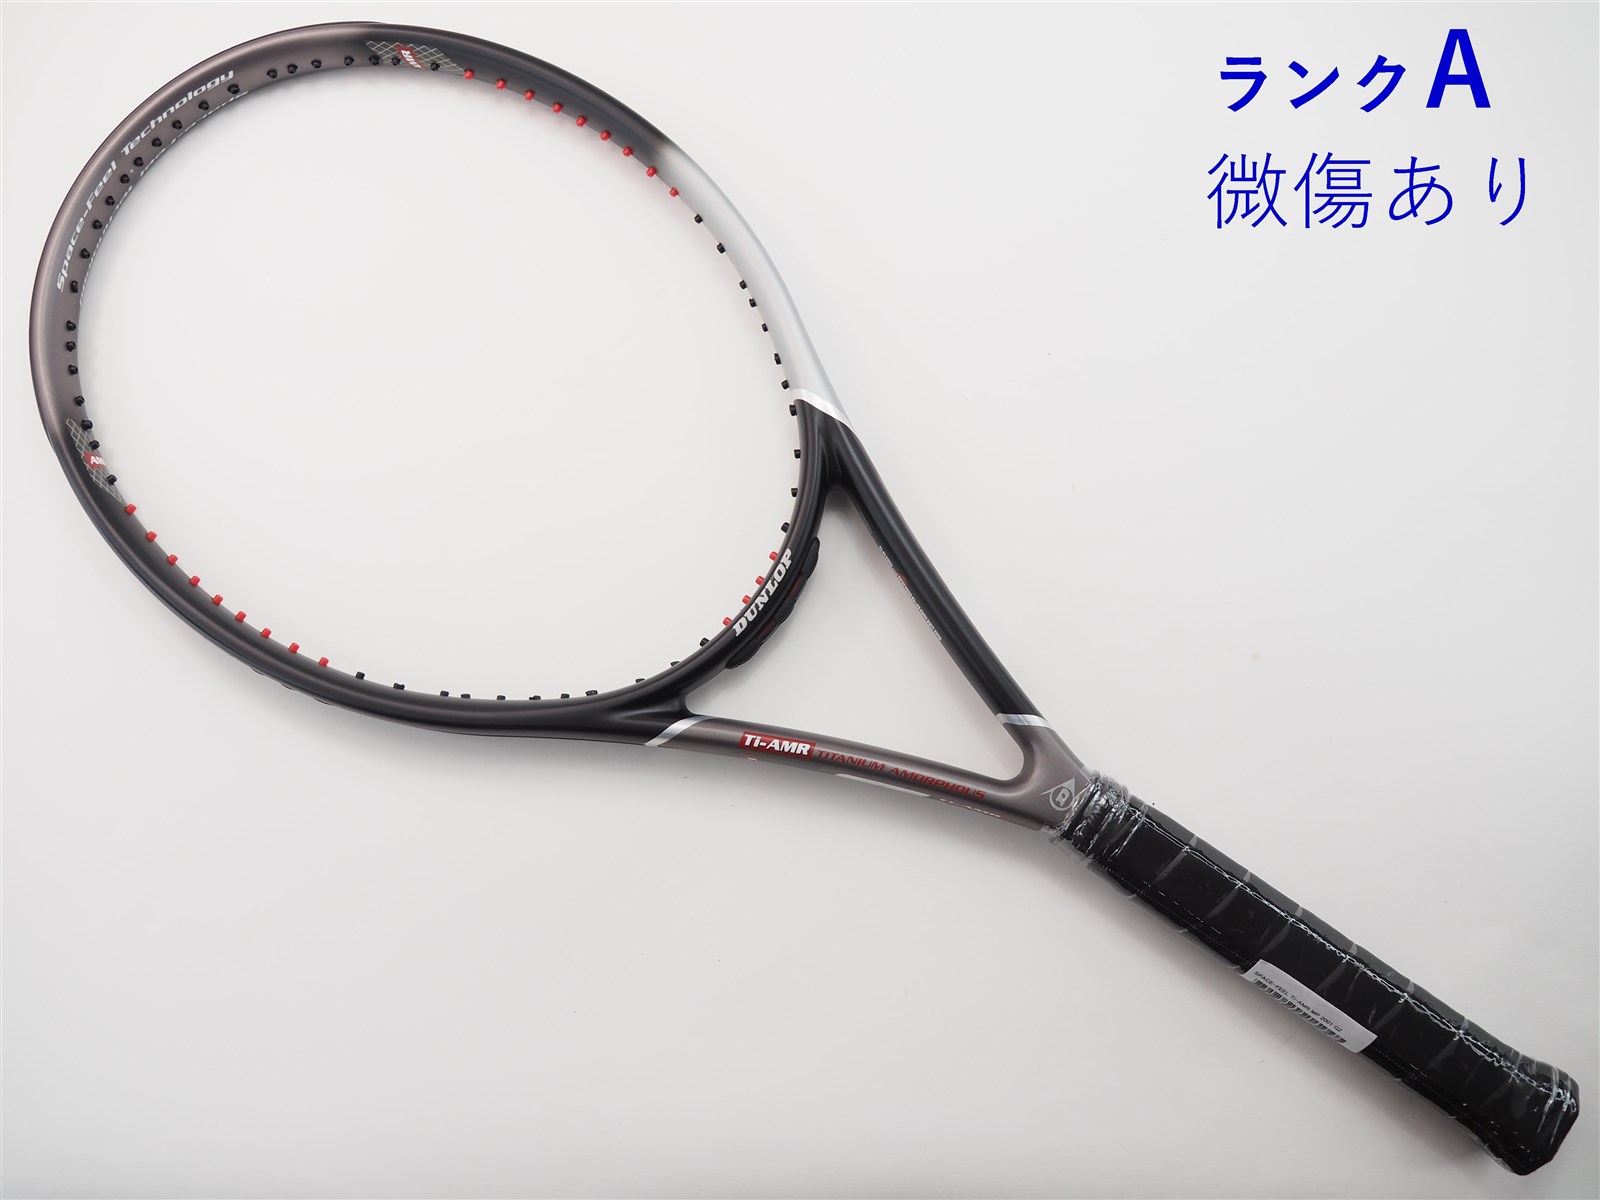 prince エンブレム 110 G2 テニスラケット - テニス